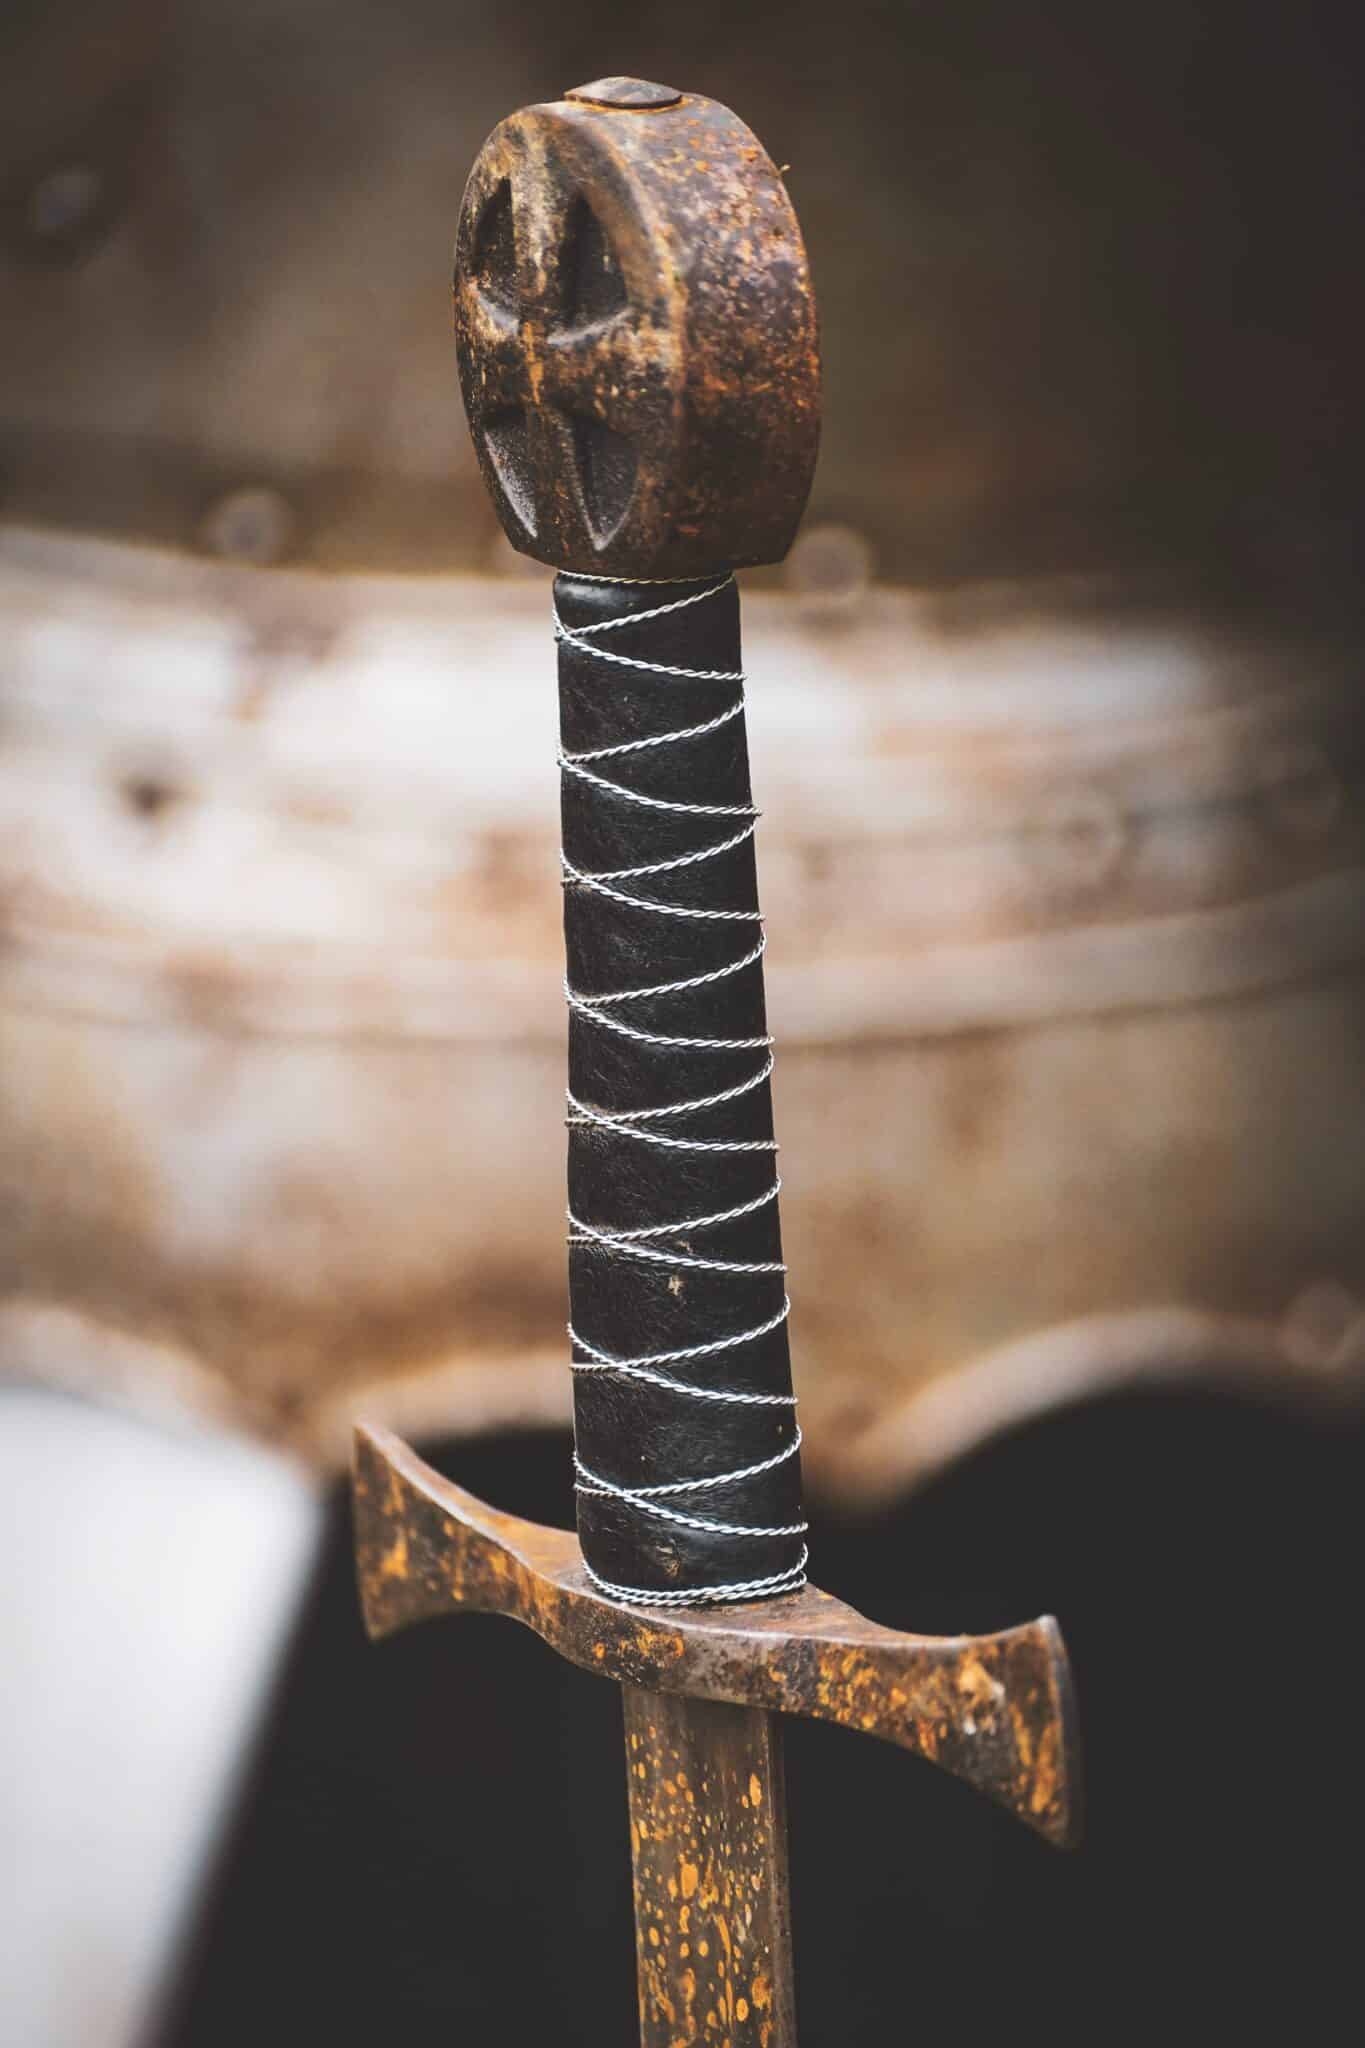 pedang